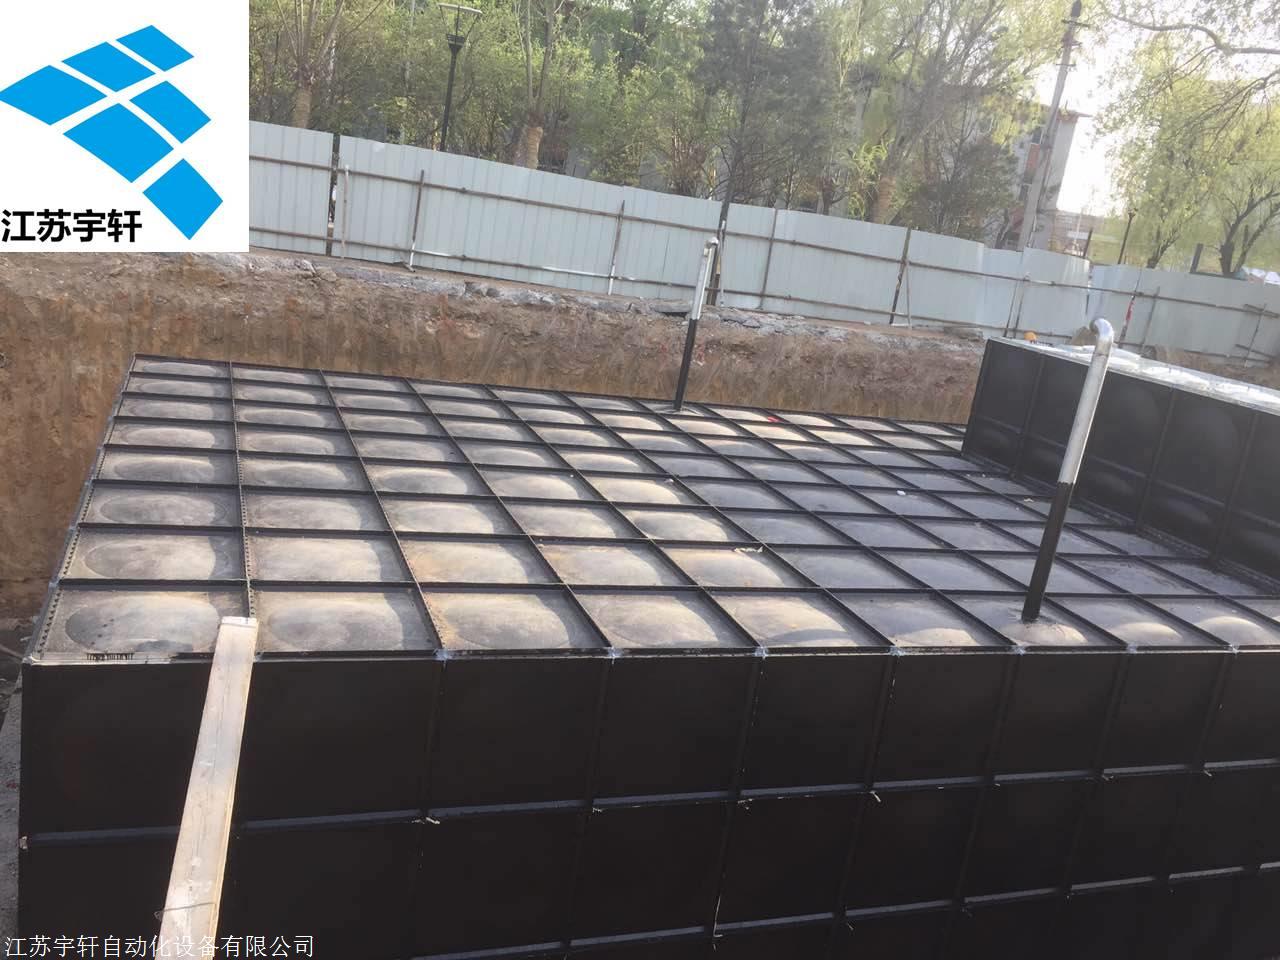 大型浴池地埋式恒压供水设备应用运行，江苏宇轩提供可靠性技术方案